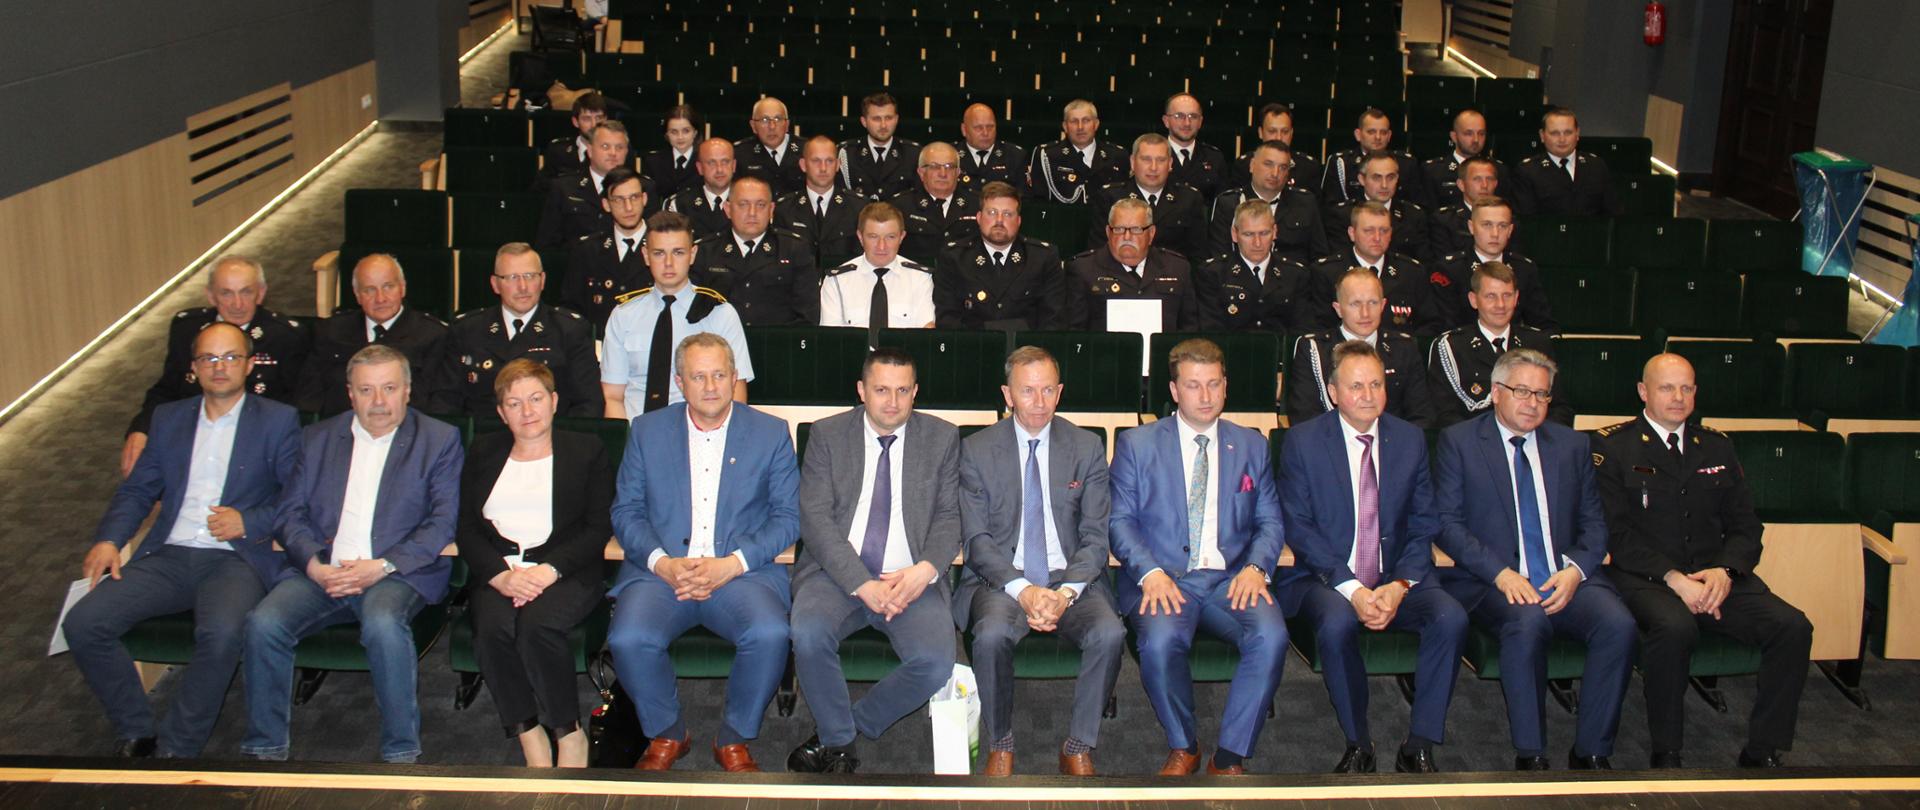 Strażacy ubrani w mundury galowe siedzą na krzesłach w czterech rzędach w sali kinowej. W pierwszym rzędzie siedzą posłowie na Sejm RP, komendant powiatowy PSP oraz przedstawiciele władz samorządowych. 